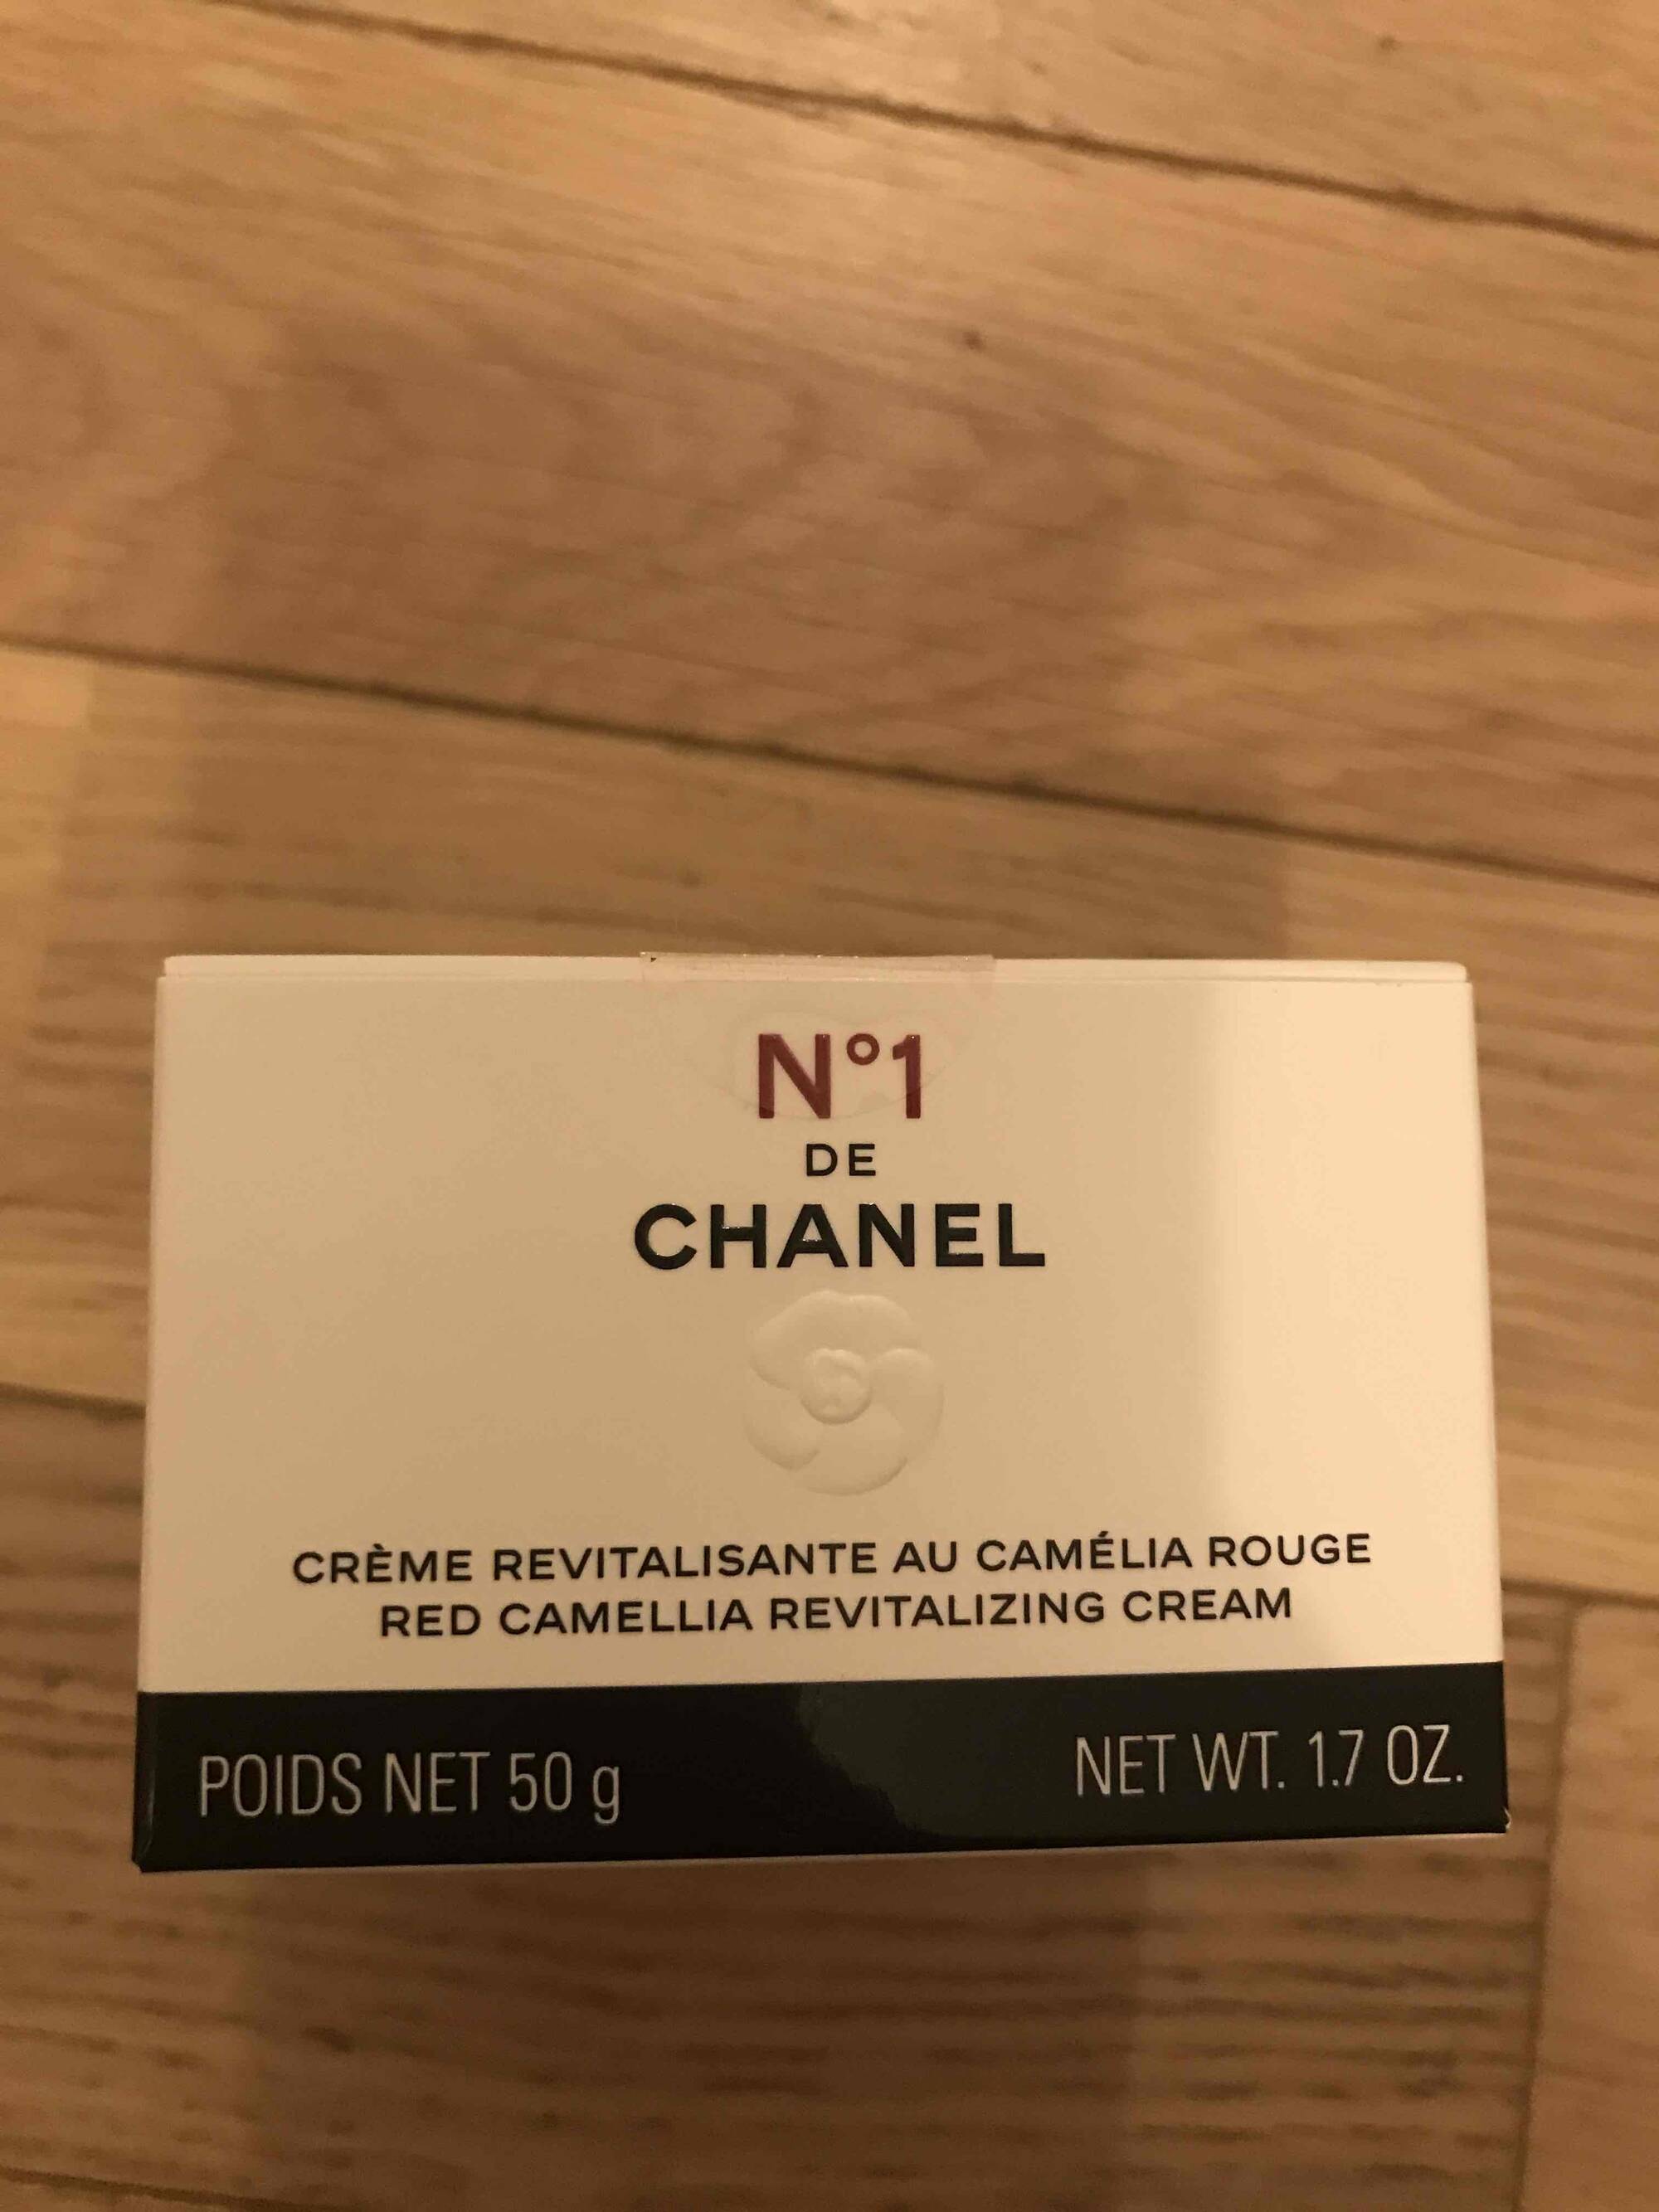 Composition CHANEL N°1 de Chanel - Crème revitalisante au camélia